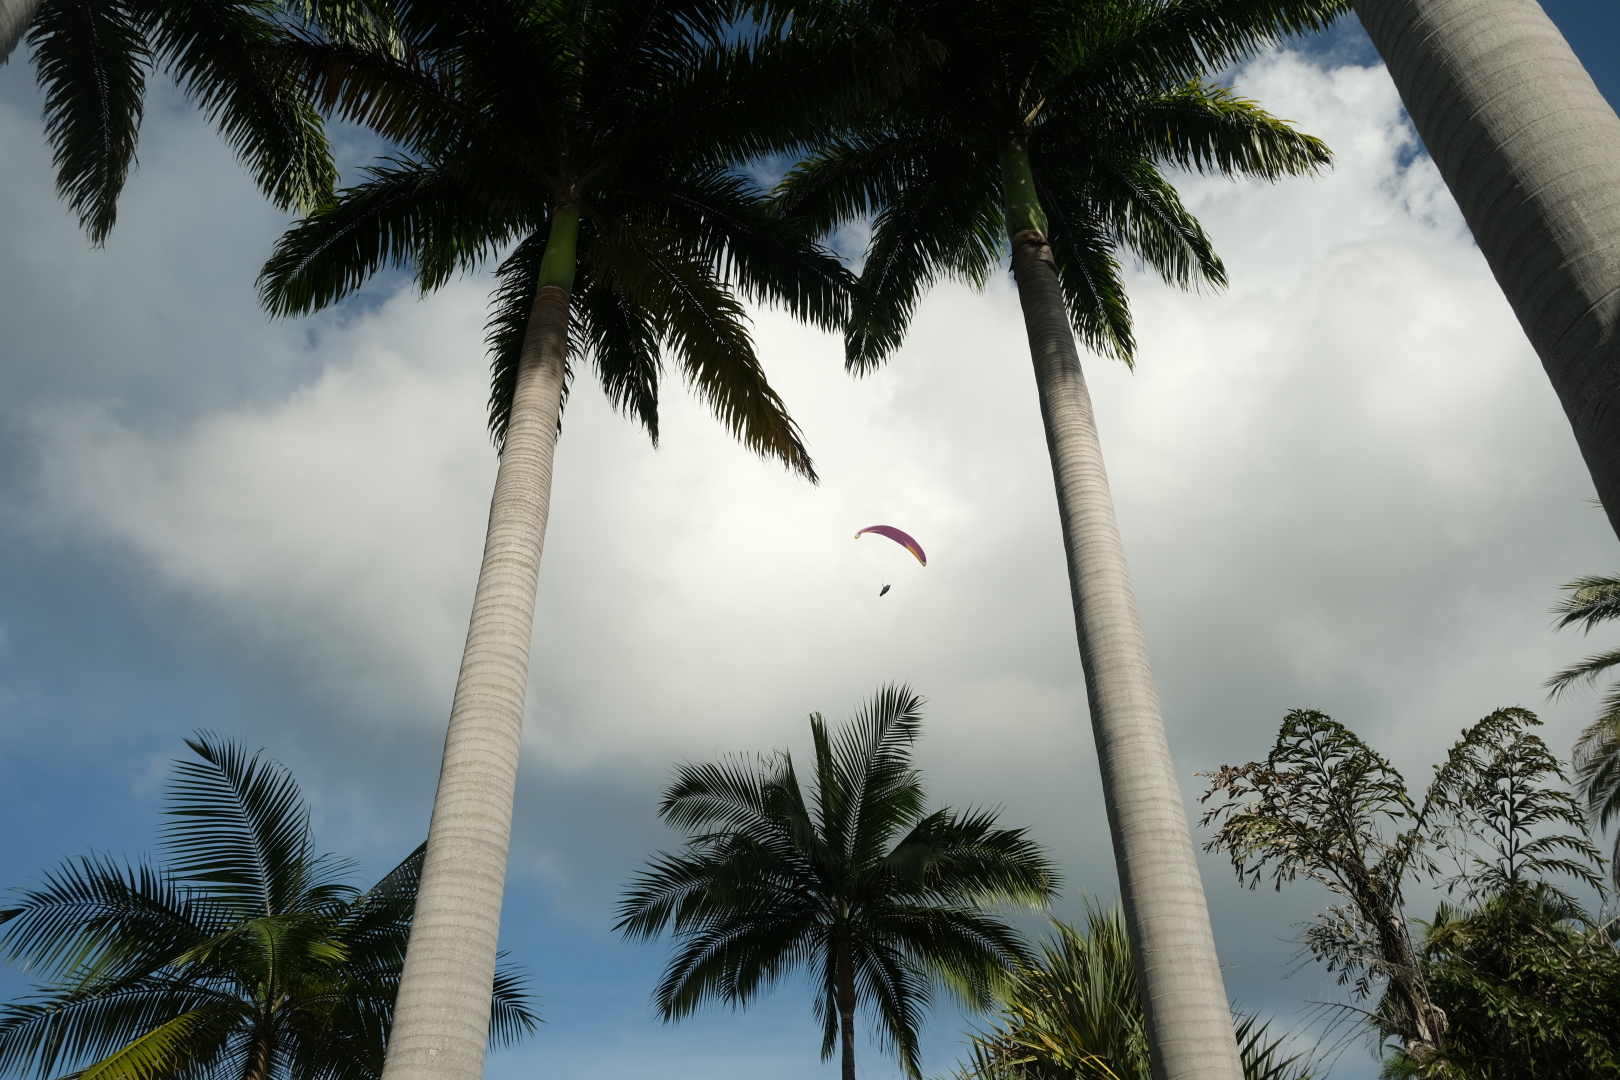 Riesige Seerosen blühen im Teich - nur morgens! Mittags klappen sie ihre Blüten zu. Im Palmengarten: durch die Palmen hindurch sieht man immer wieder Paraglider.